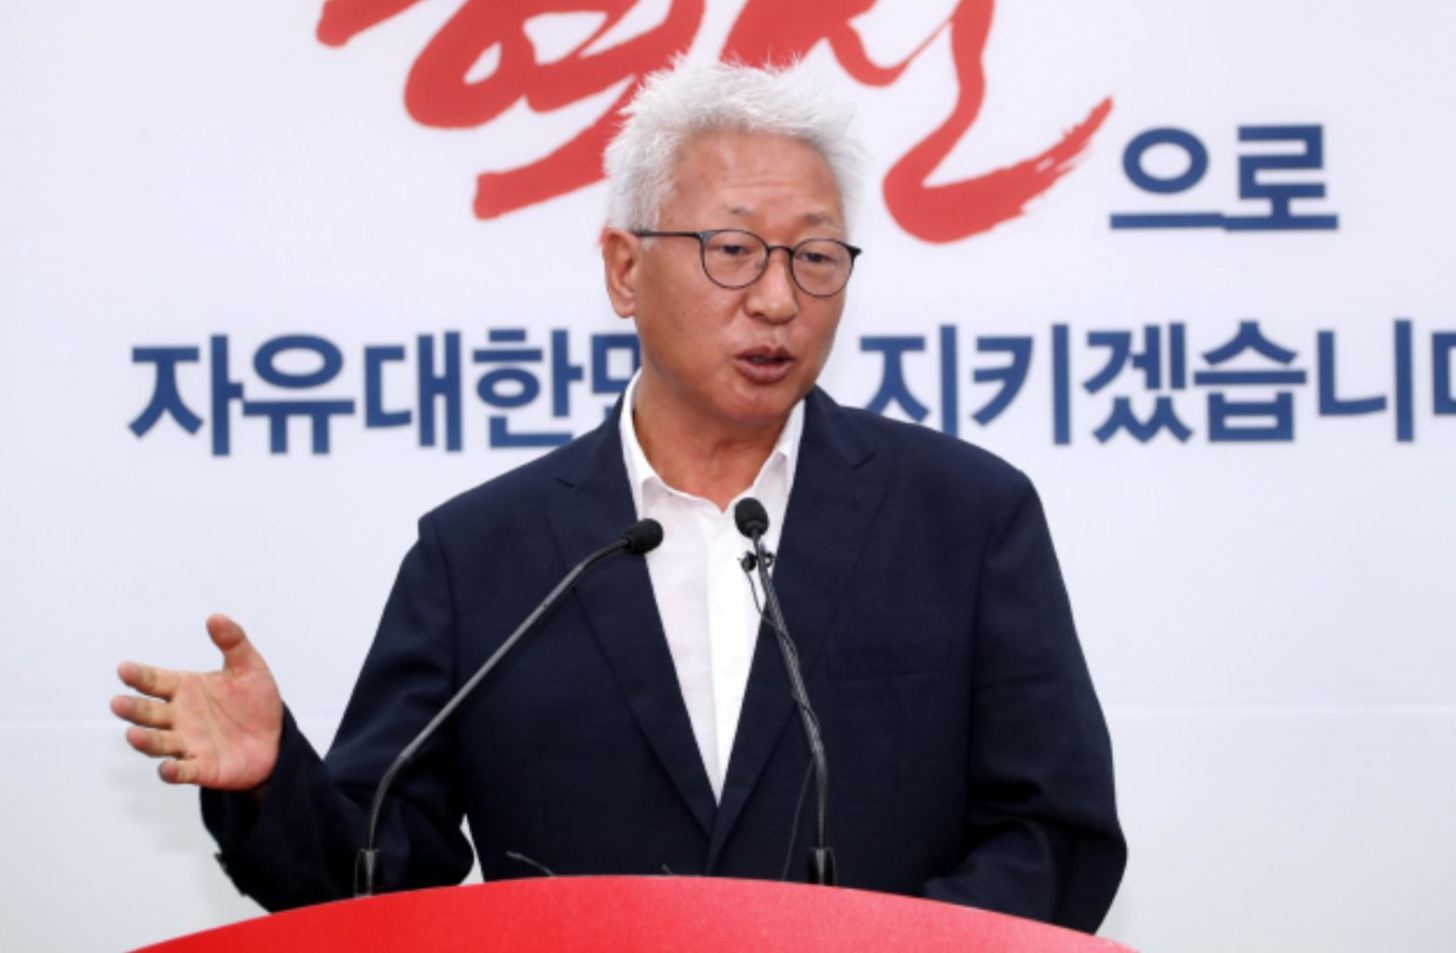 「慰安婦は売春婦であり日本政府に責任はない」と発言したリュソクチュン教授に対して韓国内で罷免など処罰を促す署名運動。首席報道官「処罰するために法改正が必要」